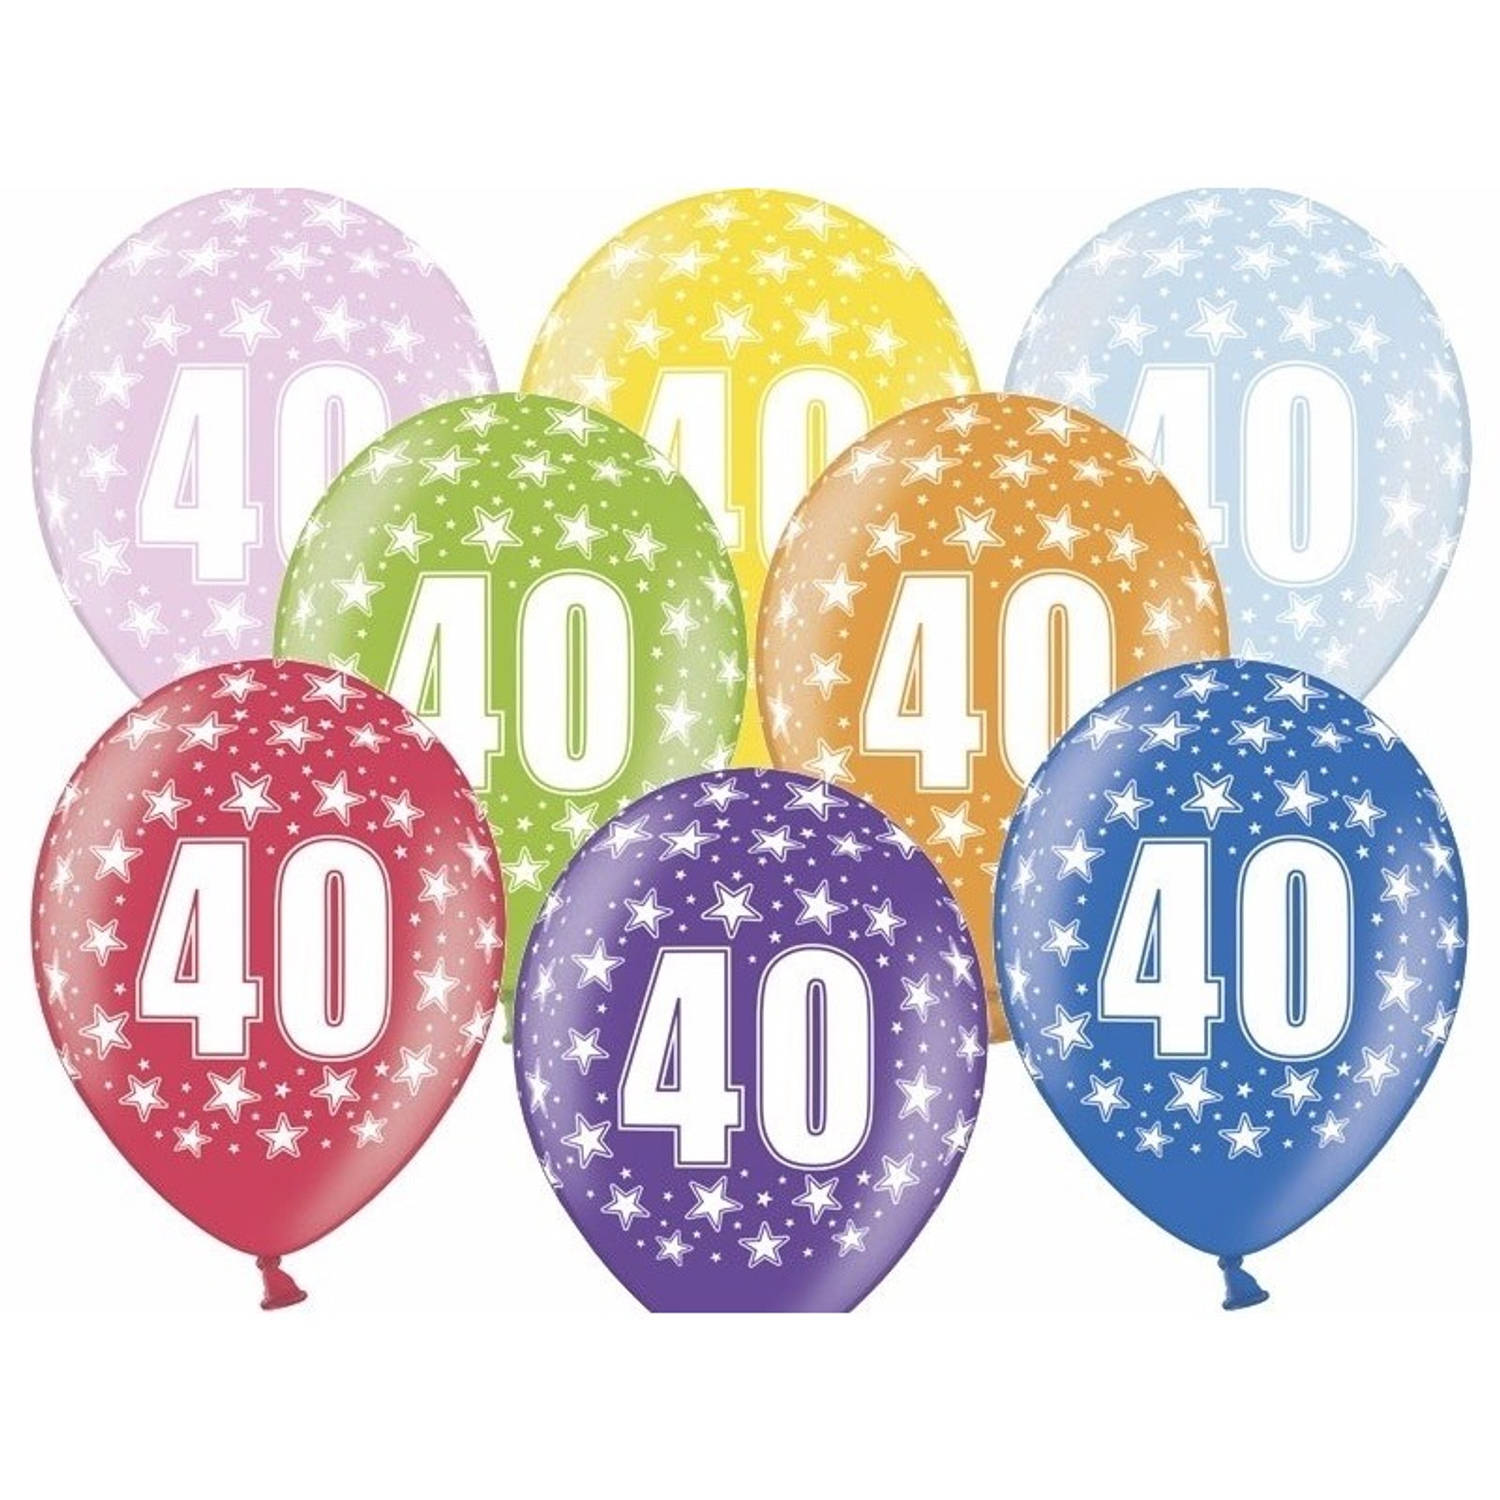 6x stuks Ballonnen 40 jaar met sterretjes versiering - Ballonnen